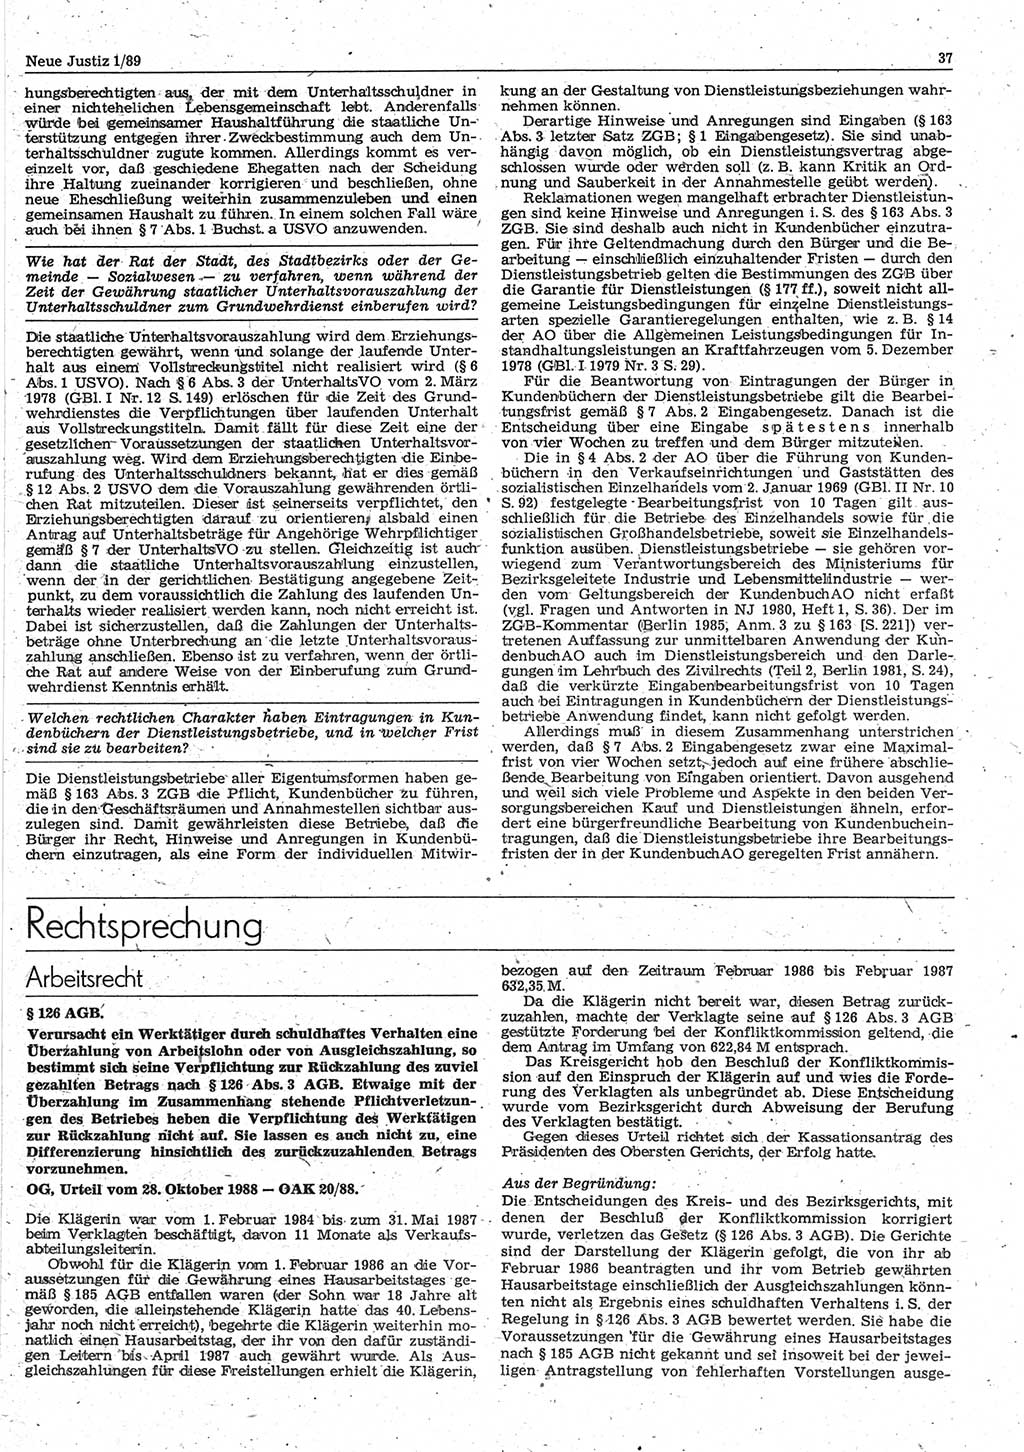 Neue Justiz (NJ), Zeitschrift für sozialistisches Recht und Gesetzlichkeit [Deutsche Demokratische Republik (DDR)], 43. Jahrgang 1989, Seite 37 (NJ DDR 1989, S. 37)